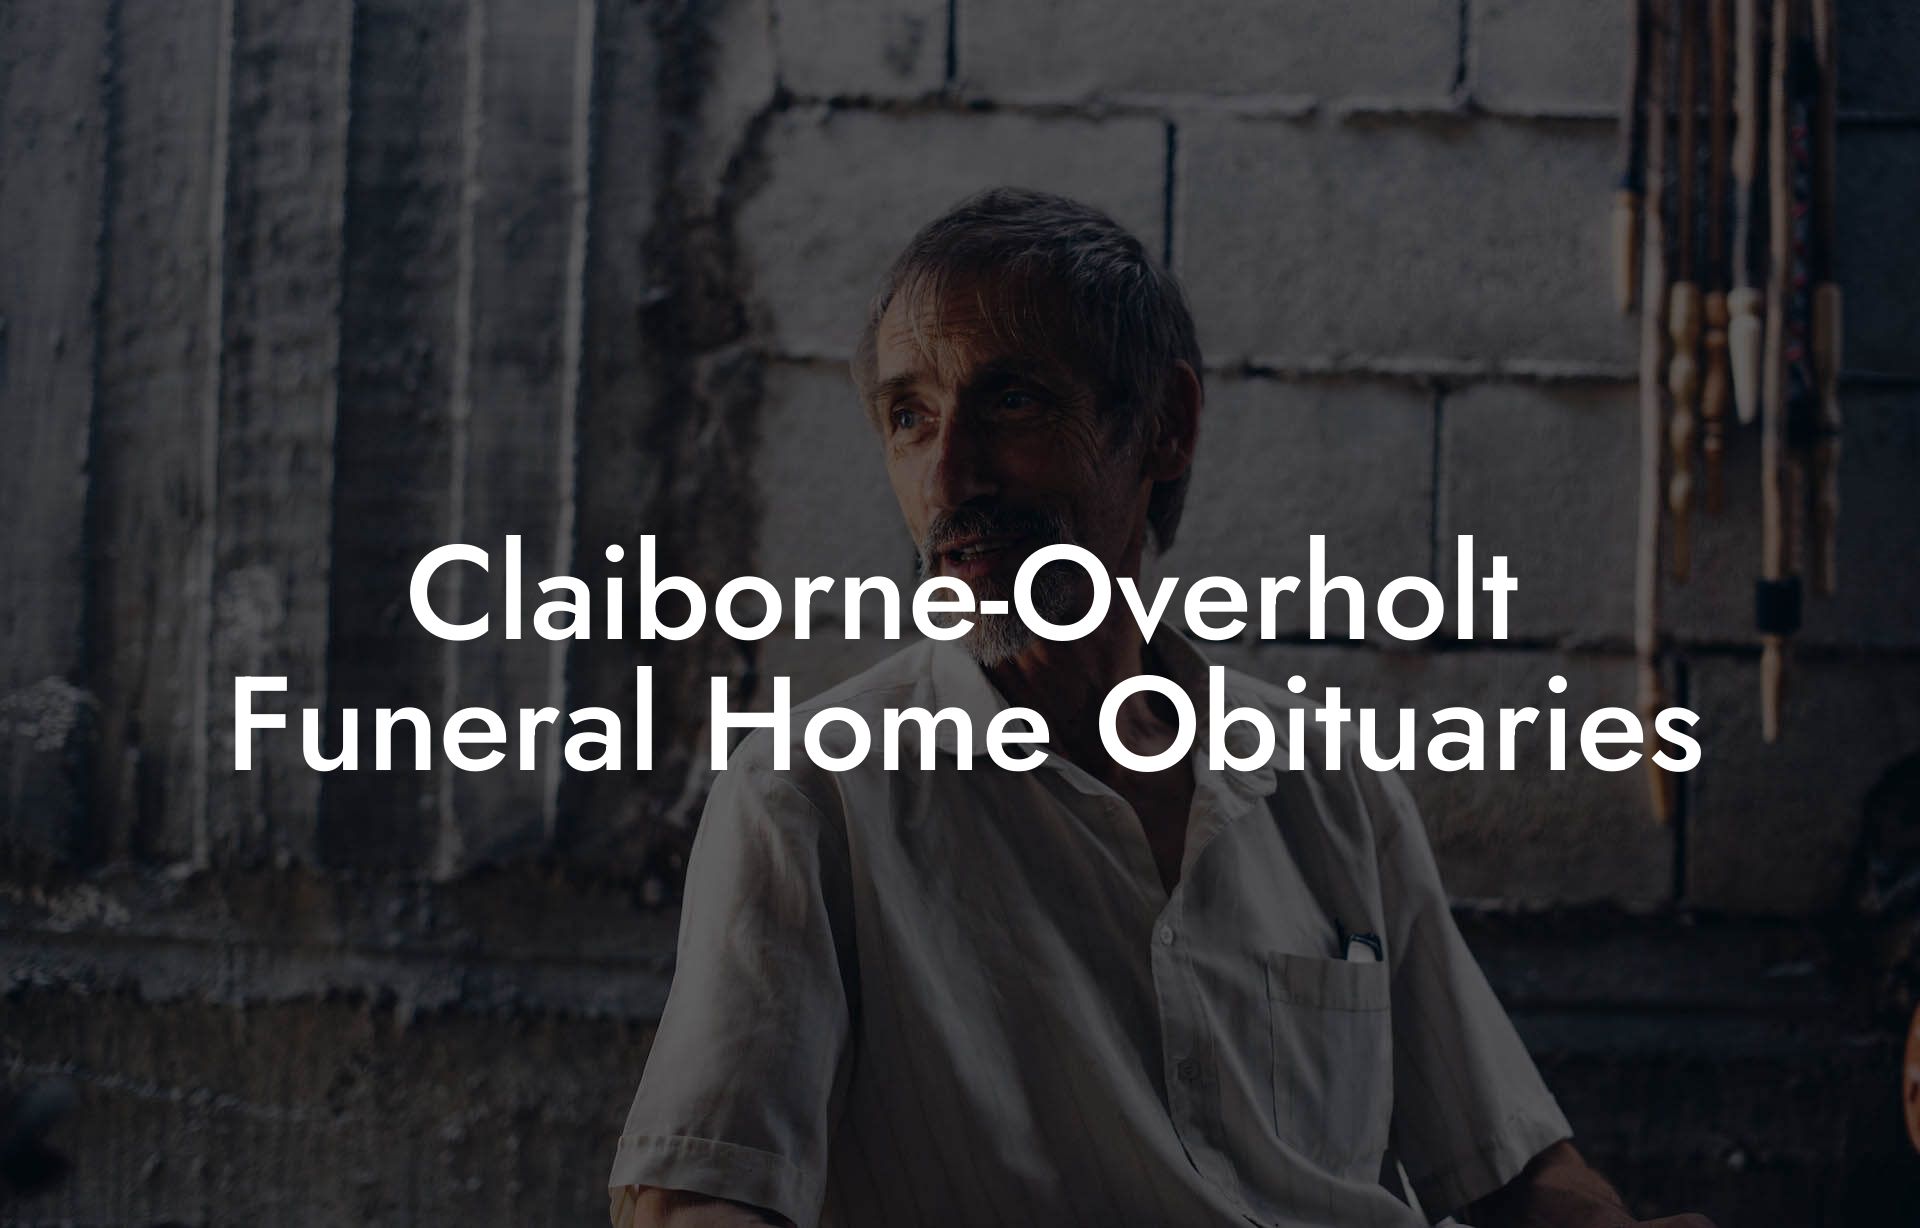 Claiborne-Overholt Funeral Home Obituaries